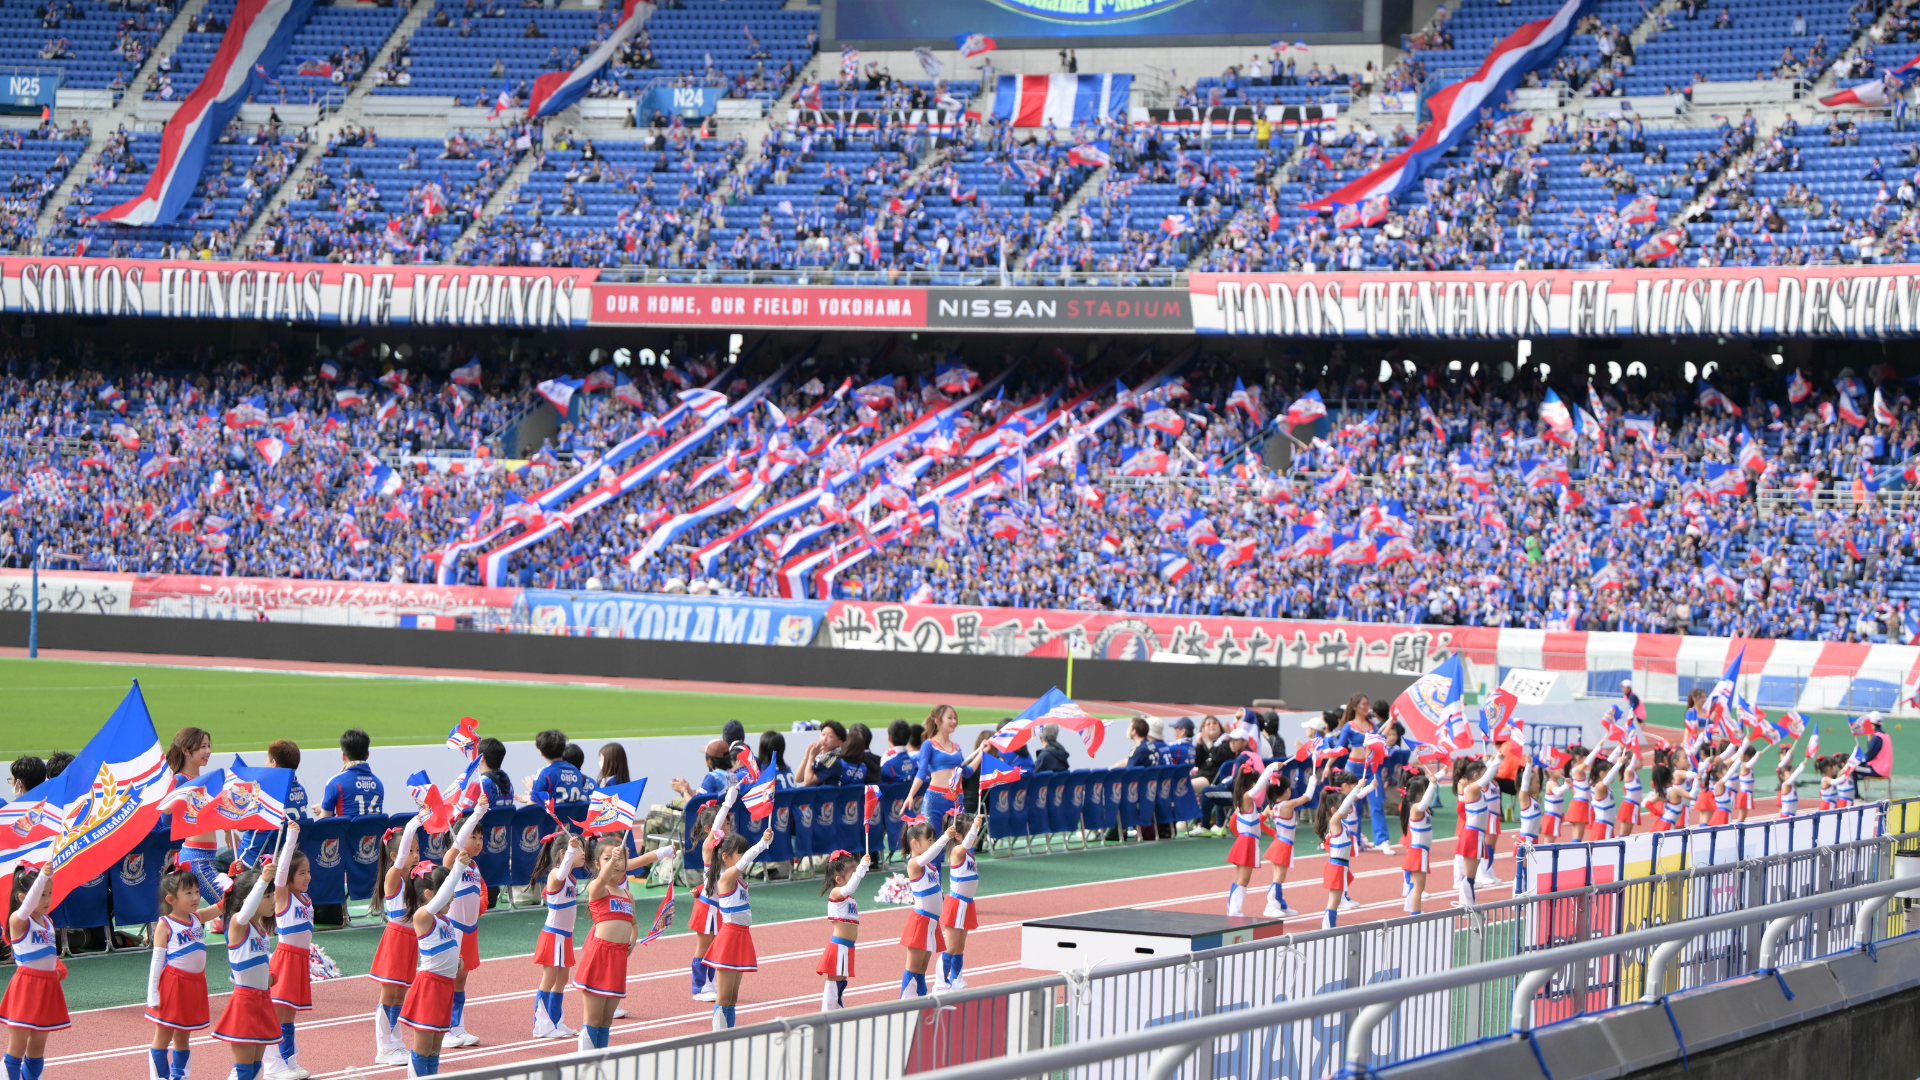 横浜F・マリノスオフィシャルチアリーダーズ Tricolore Mermaidsをトップチームとする「トリコロールマーメイズチアリーディングスクール」スクール生が日産スタジアムでパフォーマンス決定のサブ画像1